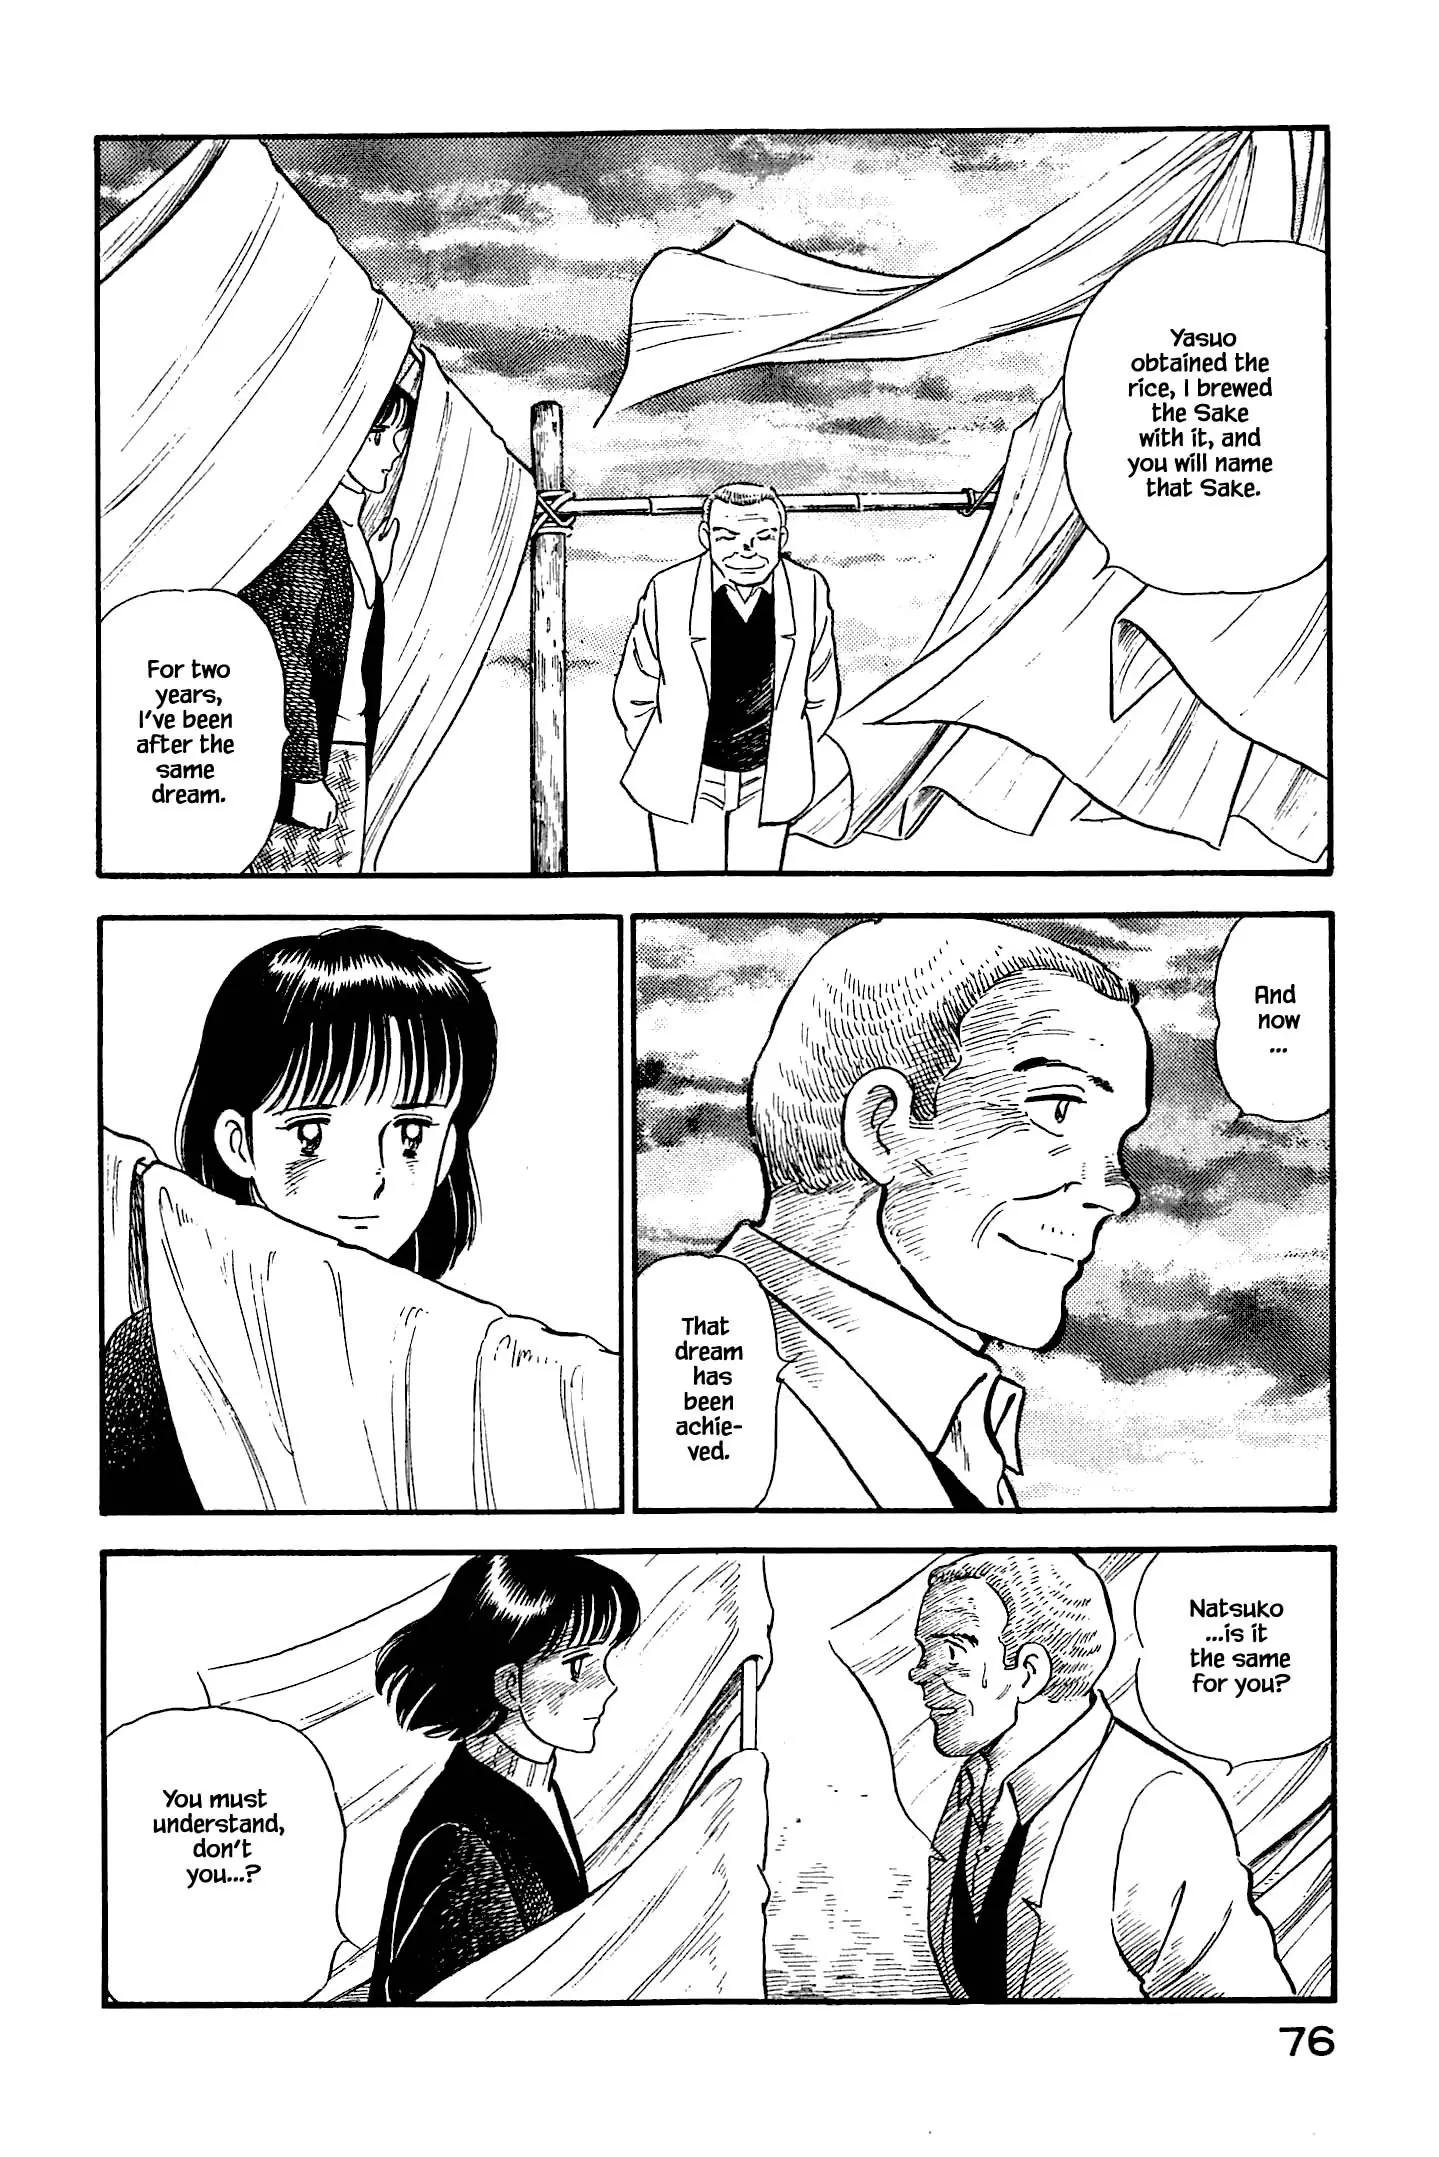 Natsuko's Sake - 124 page 18-2e8f4516